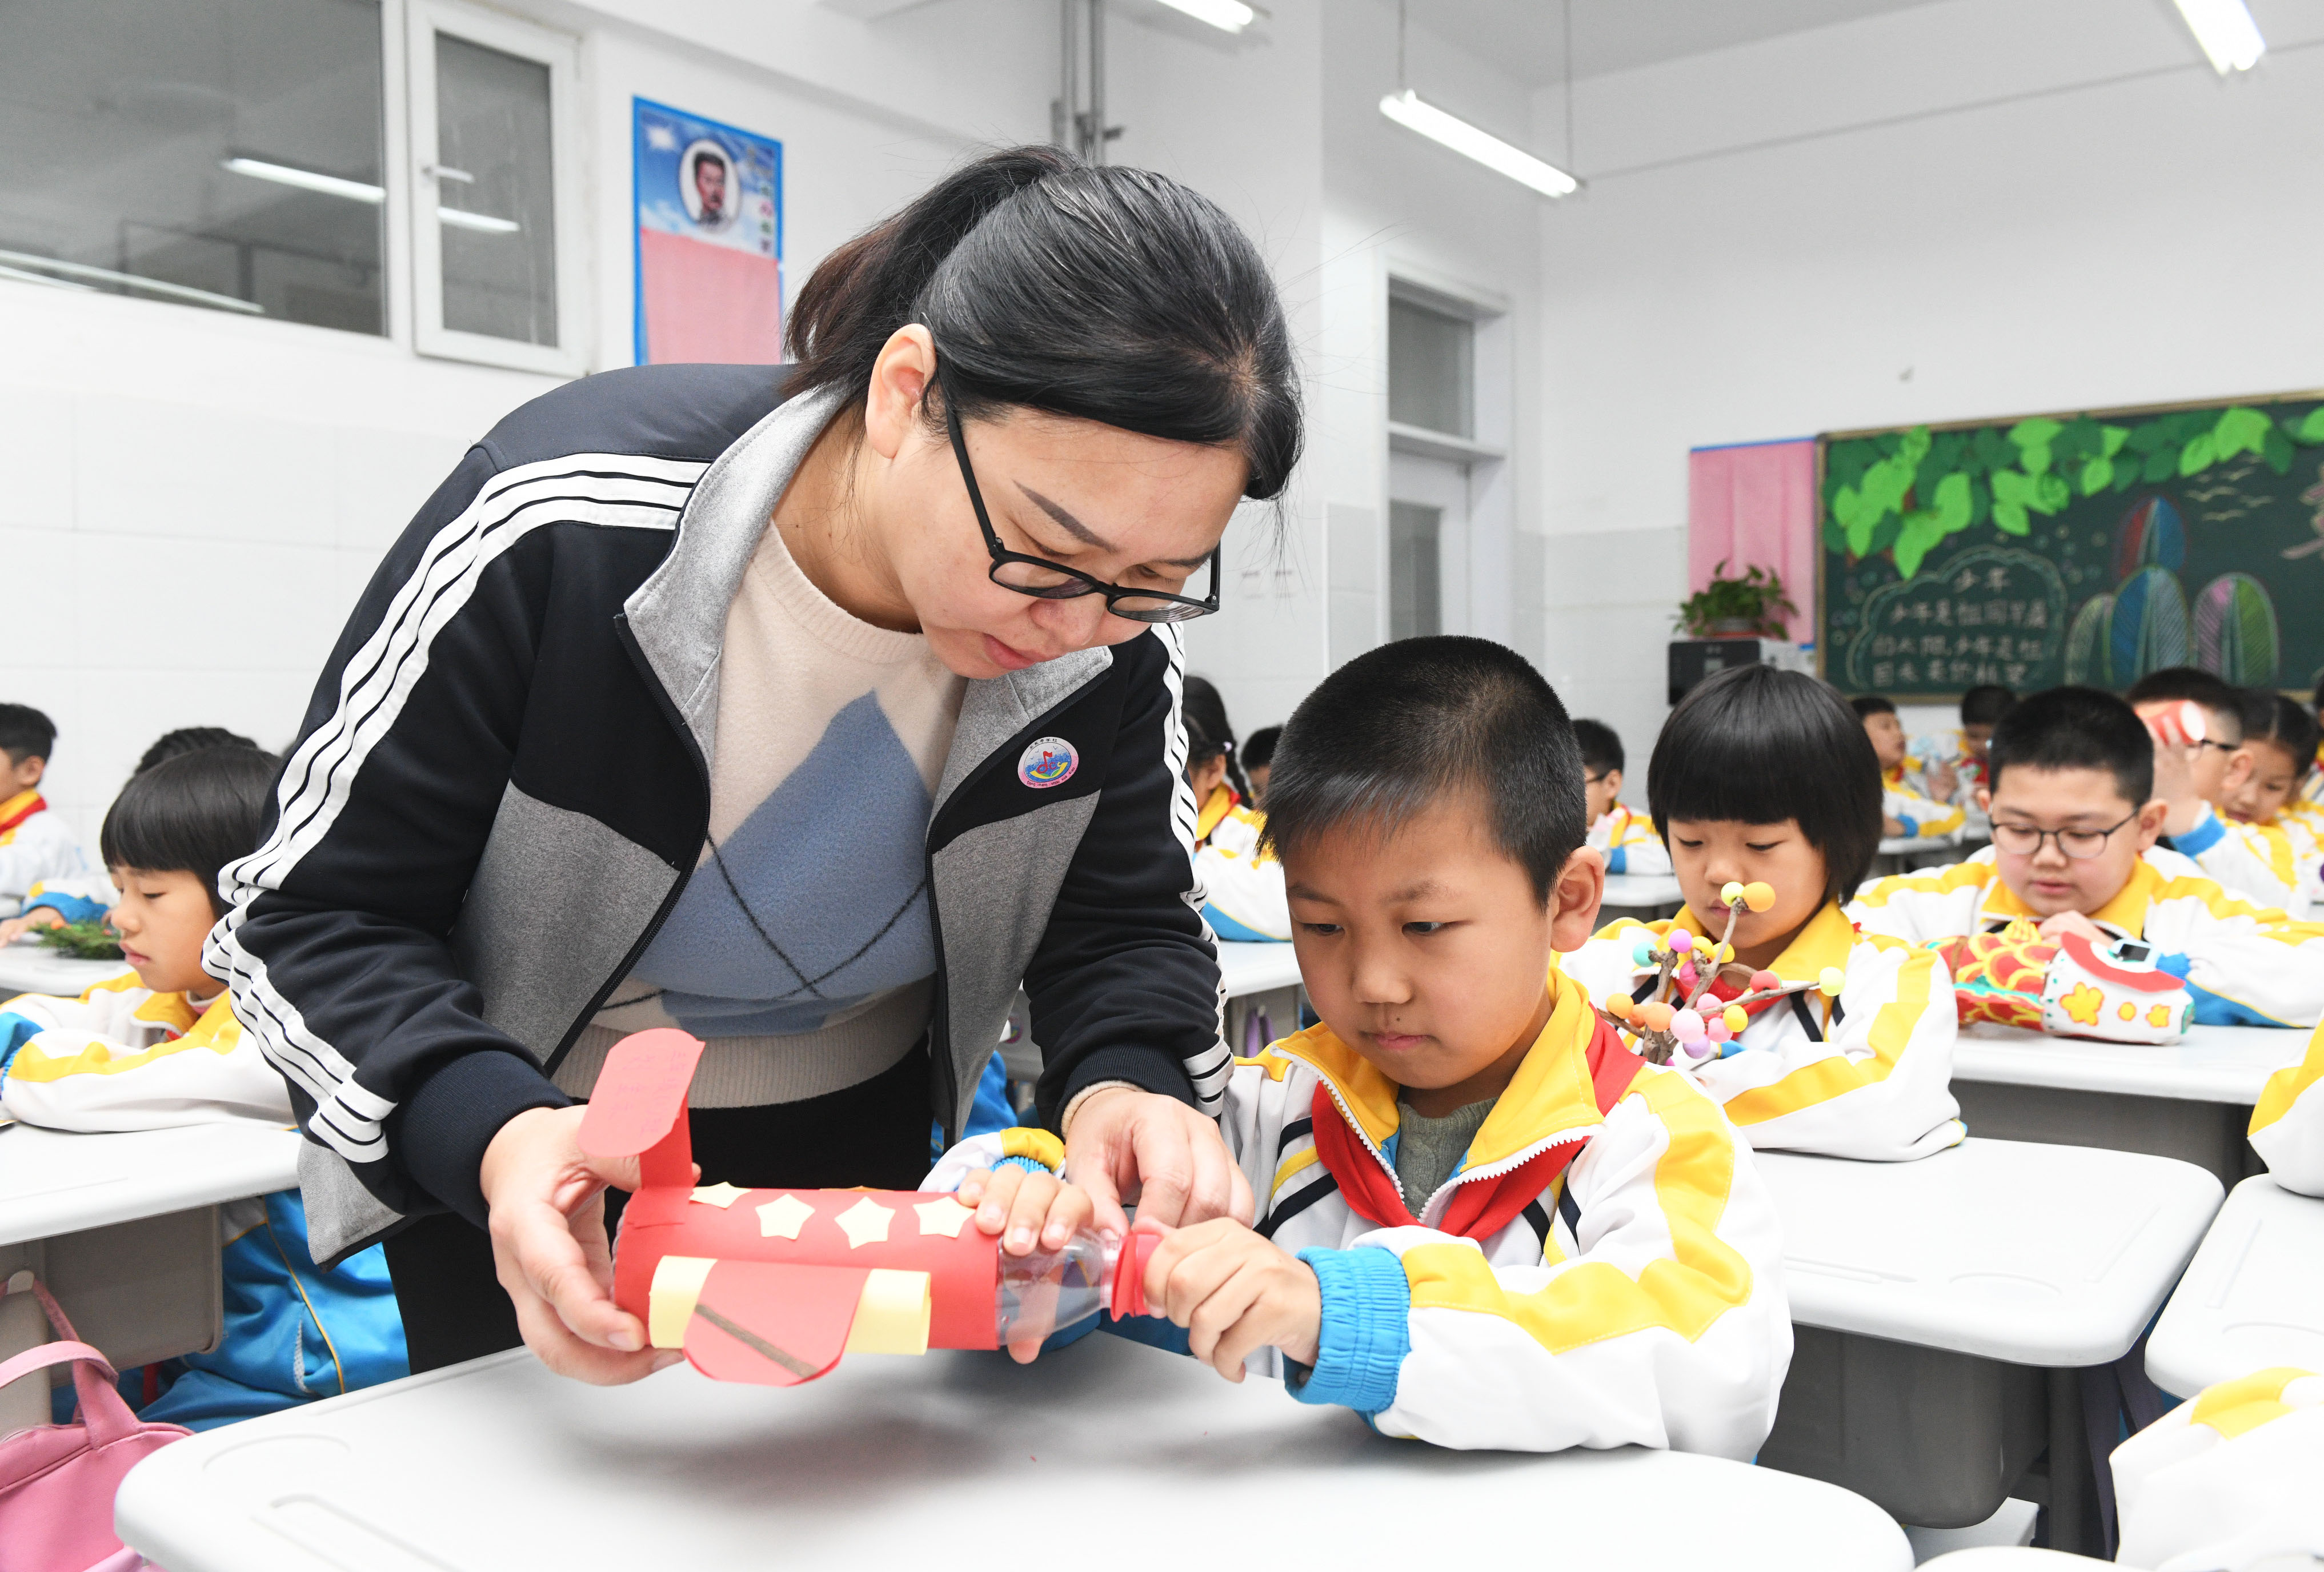 10月31日，河北省石家庄新乐市东长寿学校老师指导学生利用废旧物品制作手工作品。贾敏杰摄